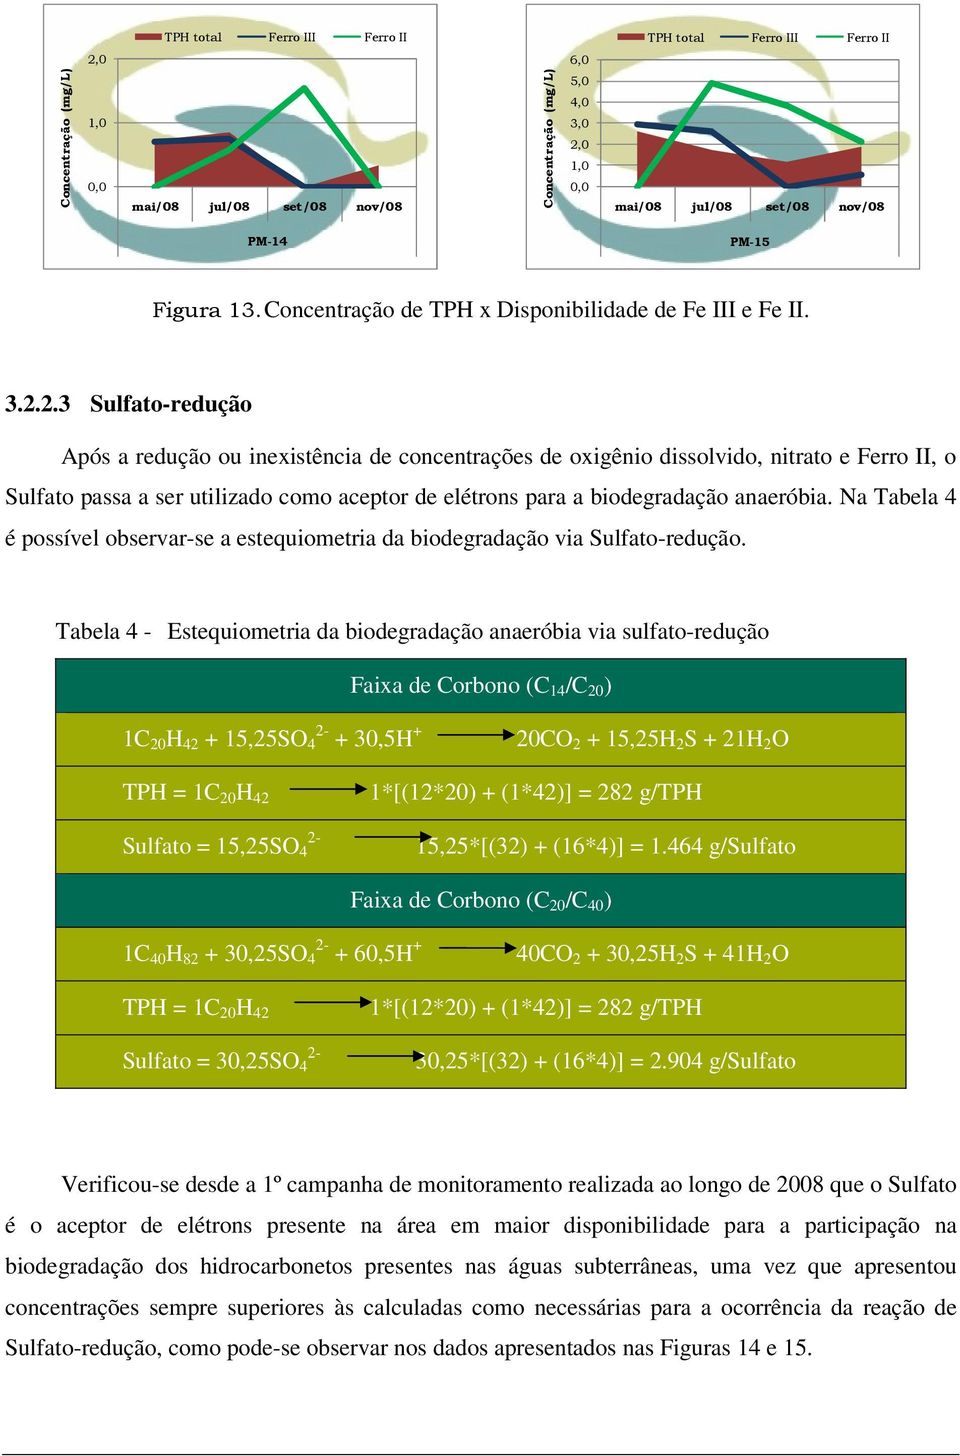 Na Tabela 4 é possível observar-se a estequiometria da biodegradação via Sulfato-redução.